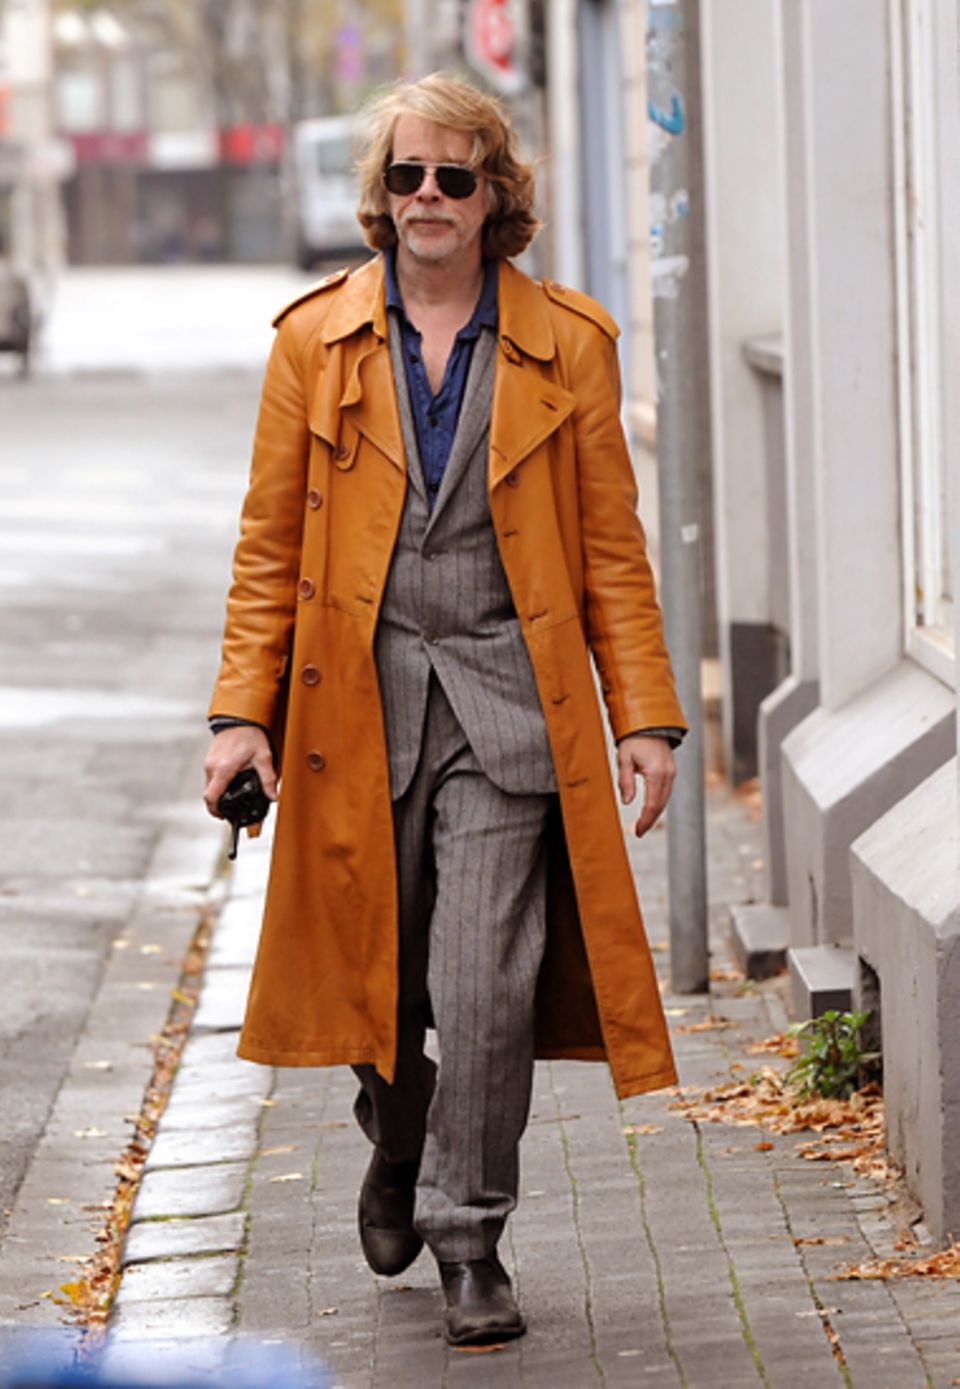 5. November 2012: Helge Schneider ist wieder als Kommissar "00 Schneider" unterwegs und steht für Dreharbeiten zu dem Kinofilm "